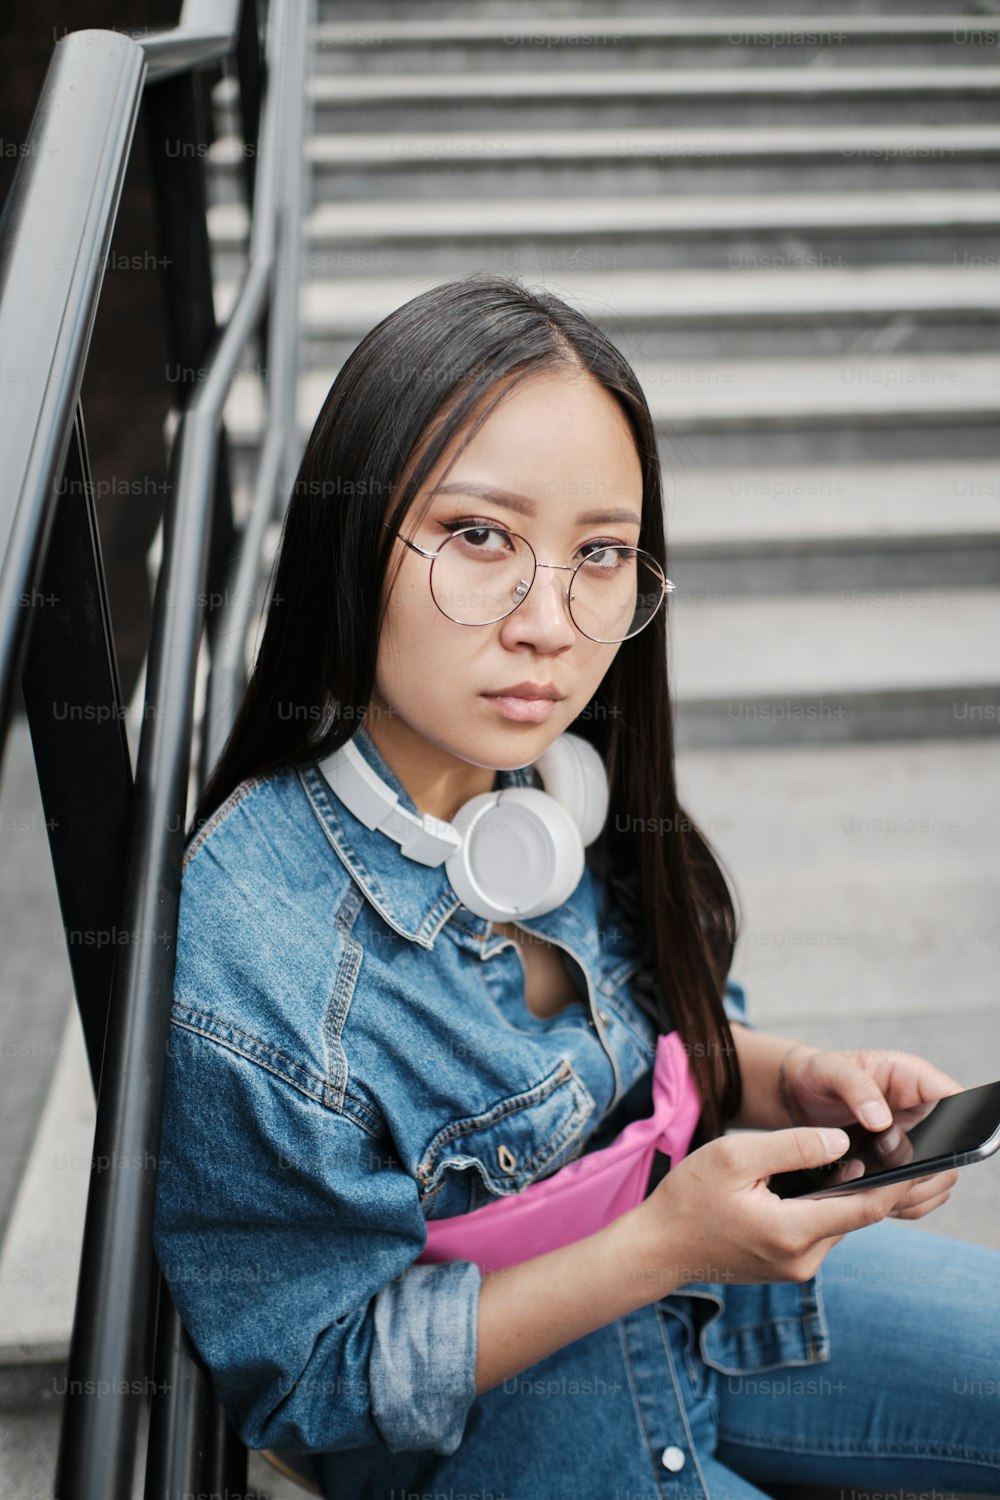 若いアジアのスケーターの女の子の接写は、スマートフォンを使用して、スマートフォンを使用して、ブルージーンズとピンクのベルトバッグを着用し、丸い眼鏡と白いヘッドフォンを着用しています